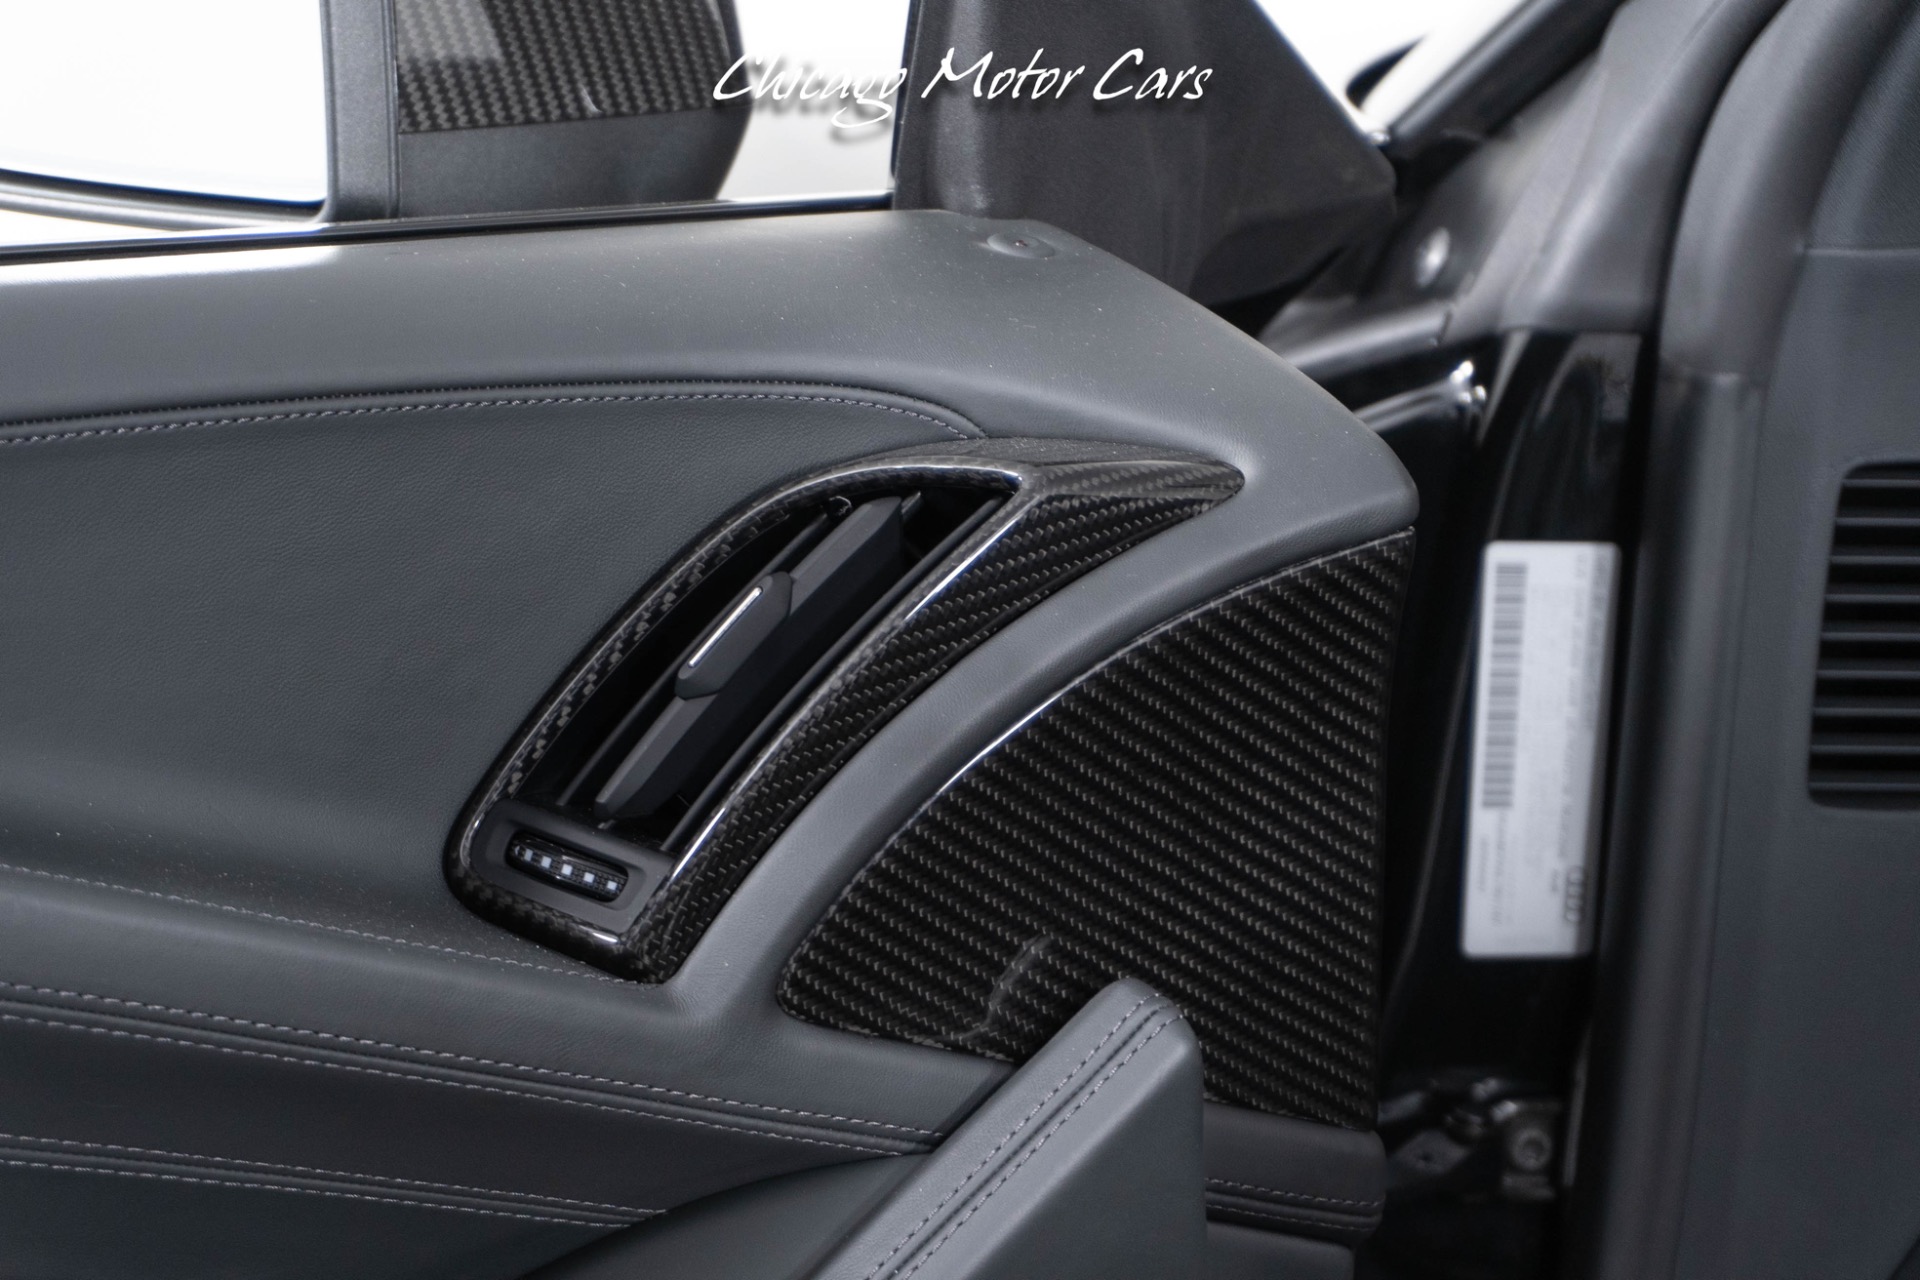 Used-2020-Audi-R8-52-quattro-V10-Performance-Spyder-Carbon-Fiber-MSRP-226k-Only-2400-Miles